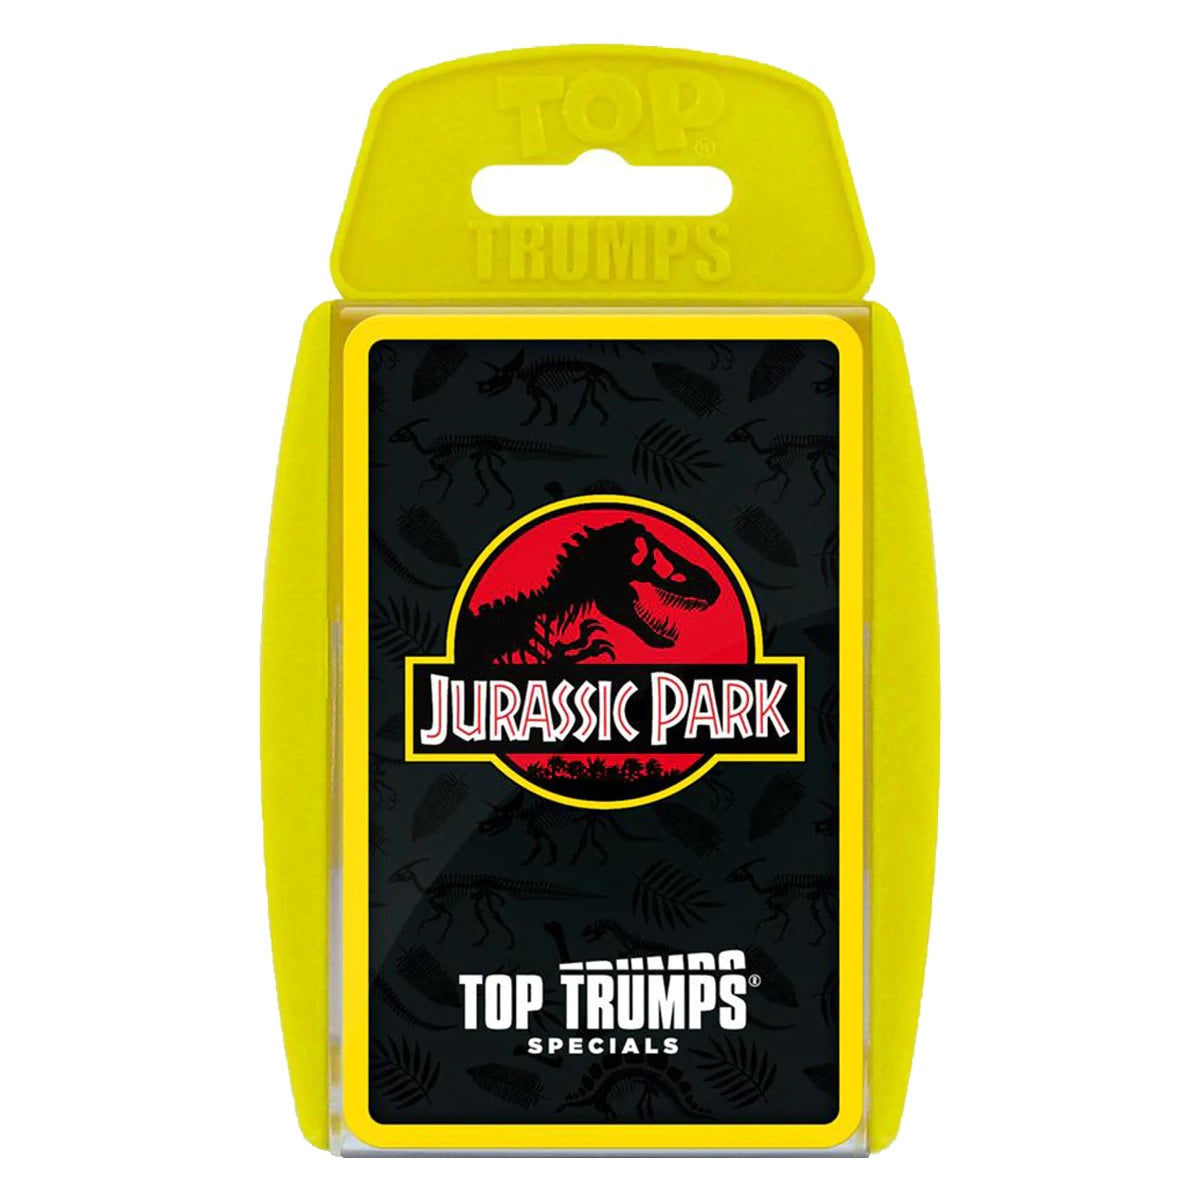 Top Trumps – Jurassic Park